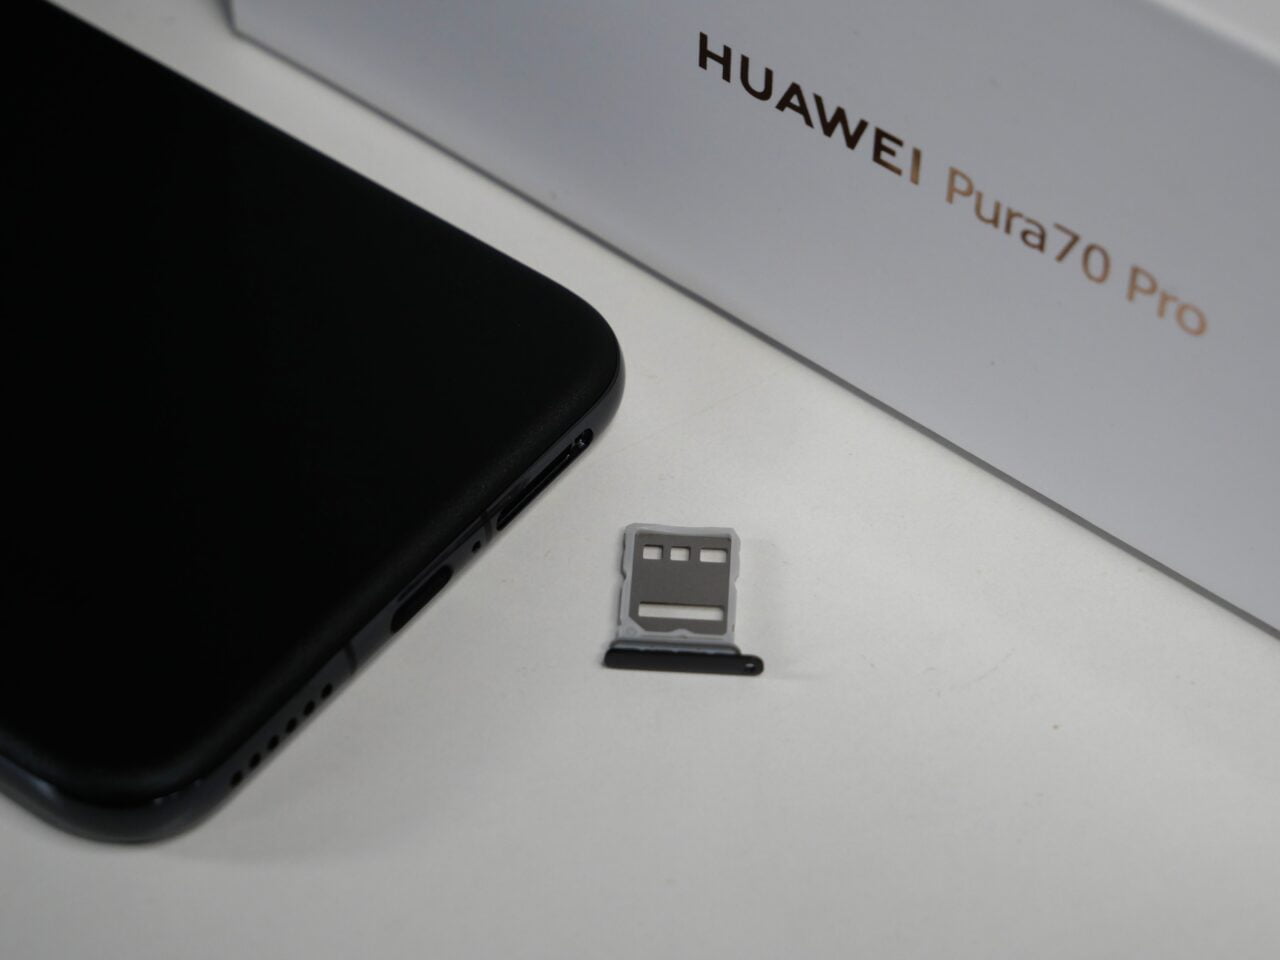 Czarny smartfon, tacka na karty SIM i karta microSD oraz pudełko z napisem "HUAWEI Pura70 Pro".